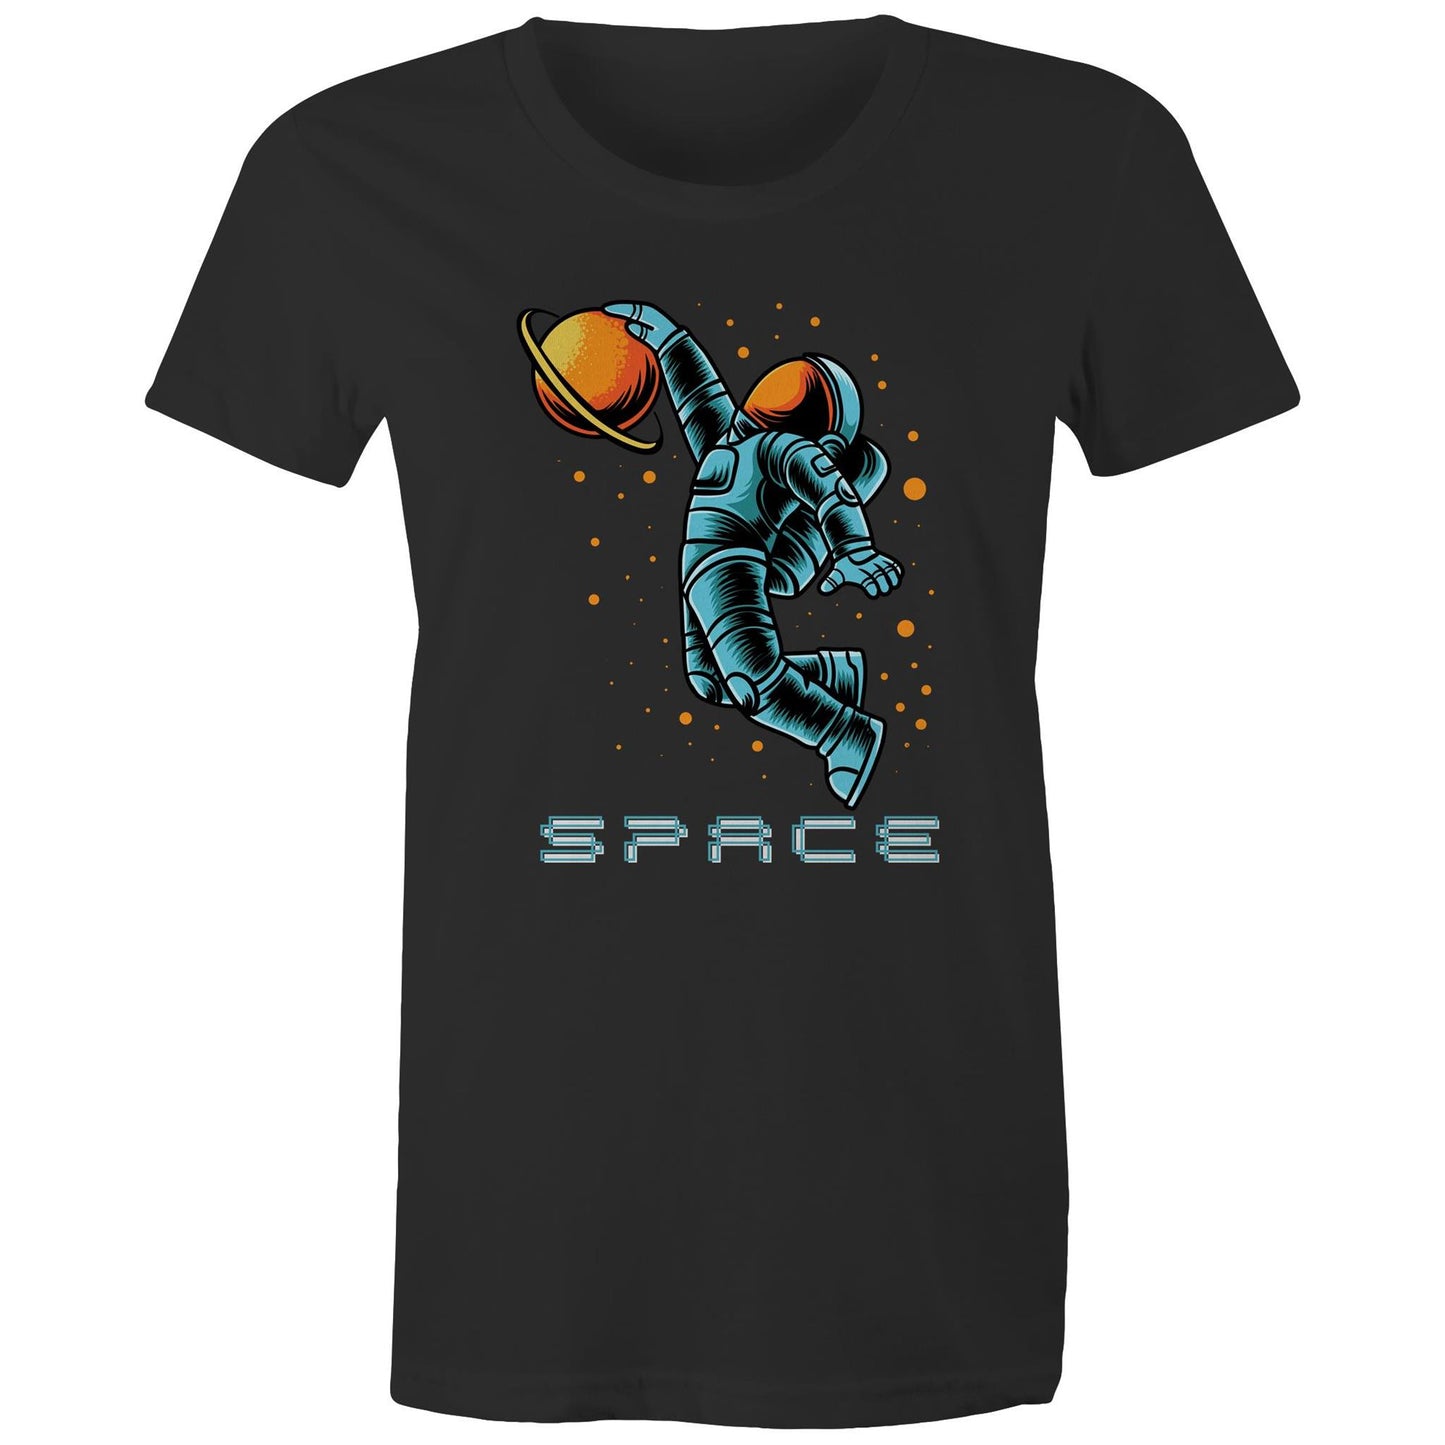 Astronaut Basketball - Womens T-shirt Black Womens T-shirt Space